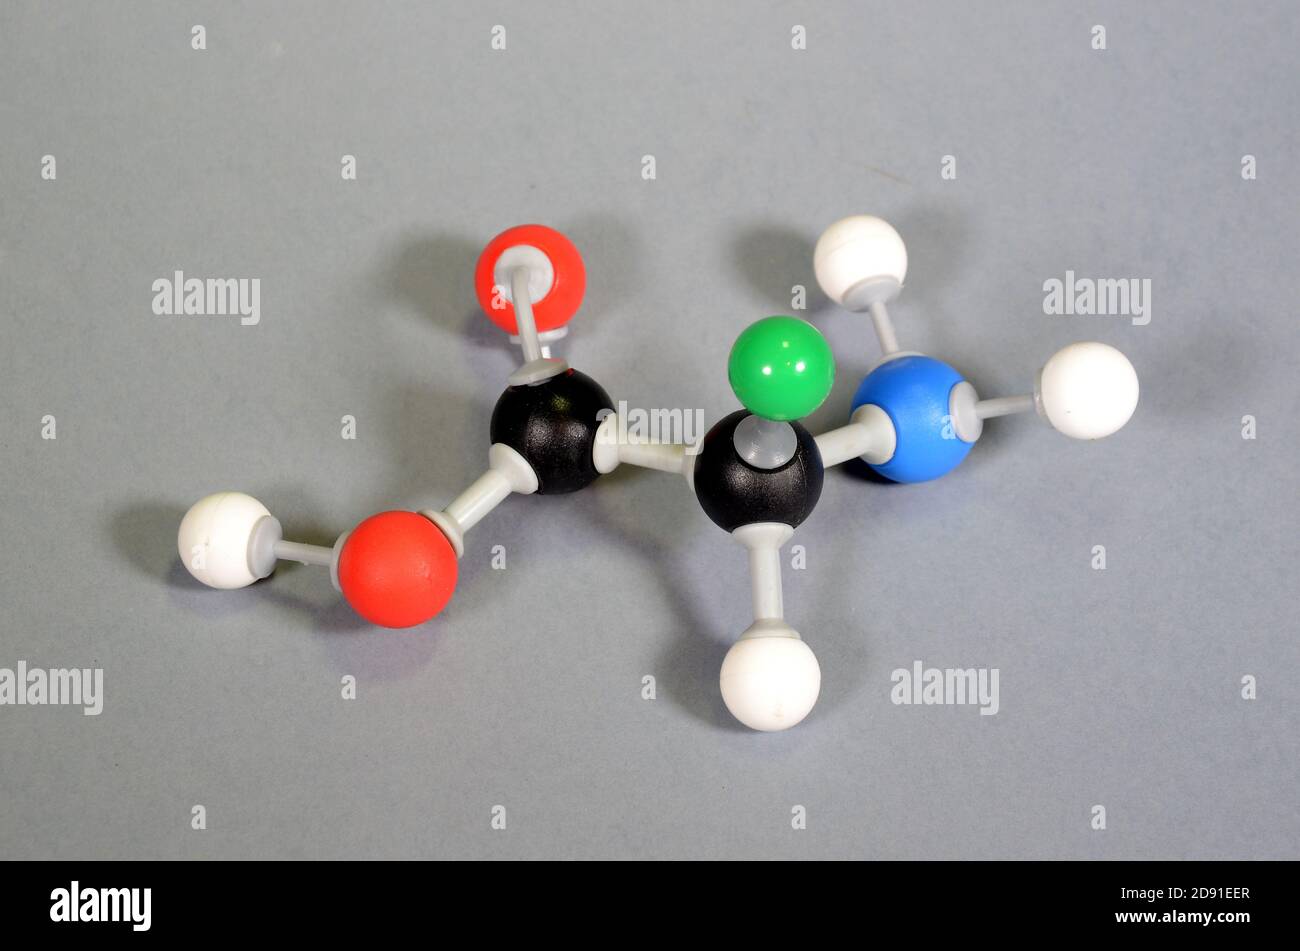 Modèle moléculaire d'acide aminé. Le noir est le carbone, le rouge est l'oxygène, le blanc est l'hydrogène, le bleu est l'azote, et le vert représente une goupe de repos qui peut avoir un chiffre Banque D'Images